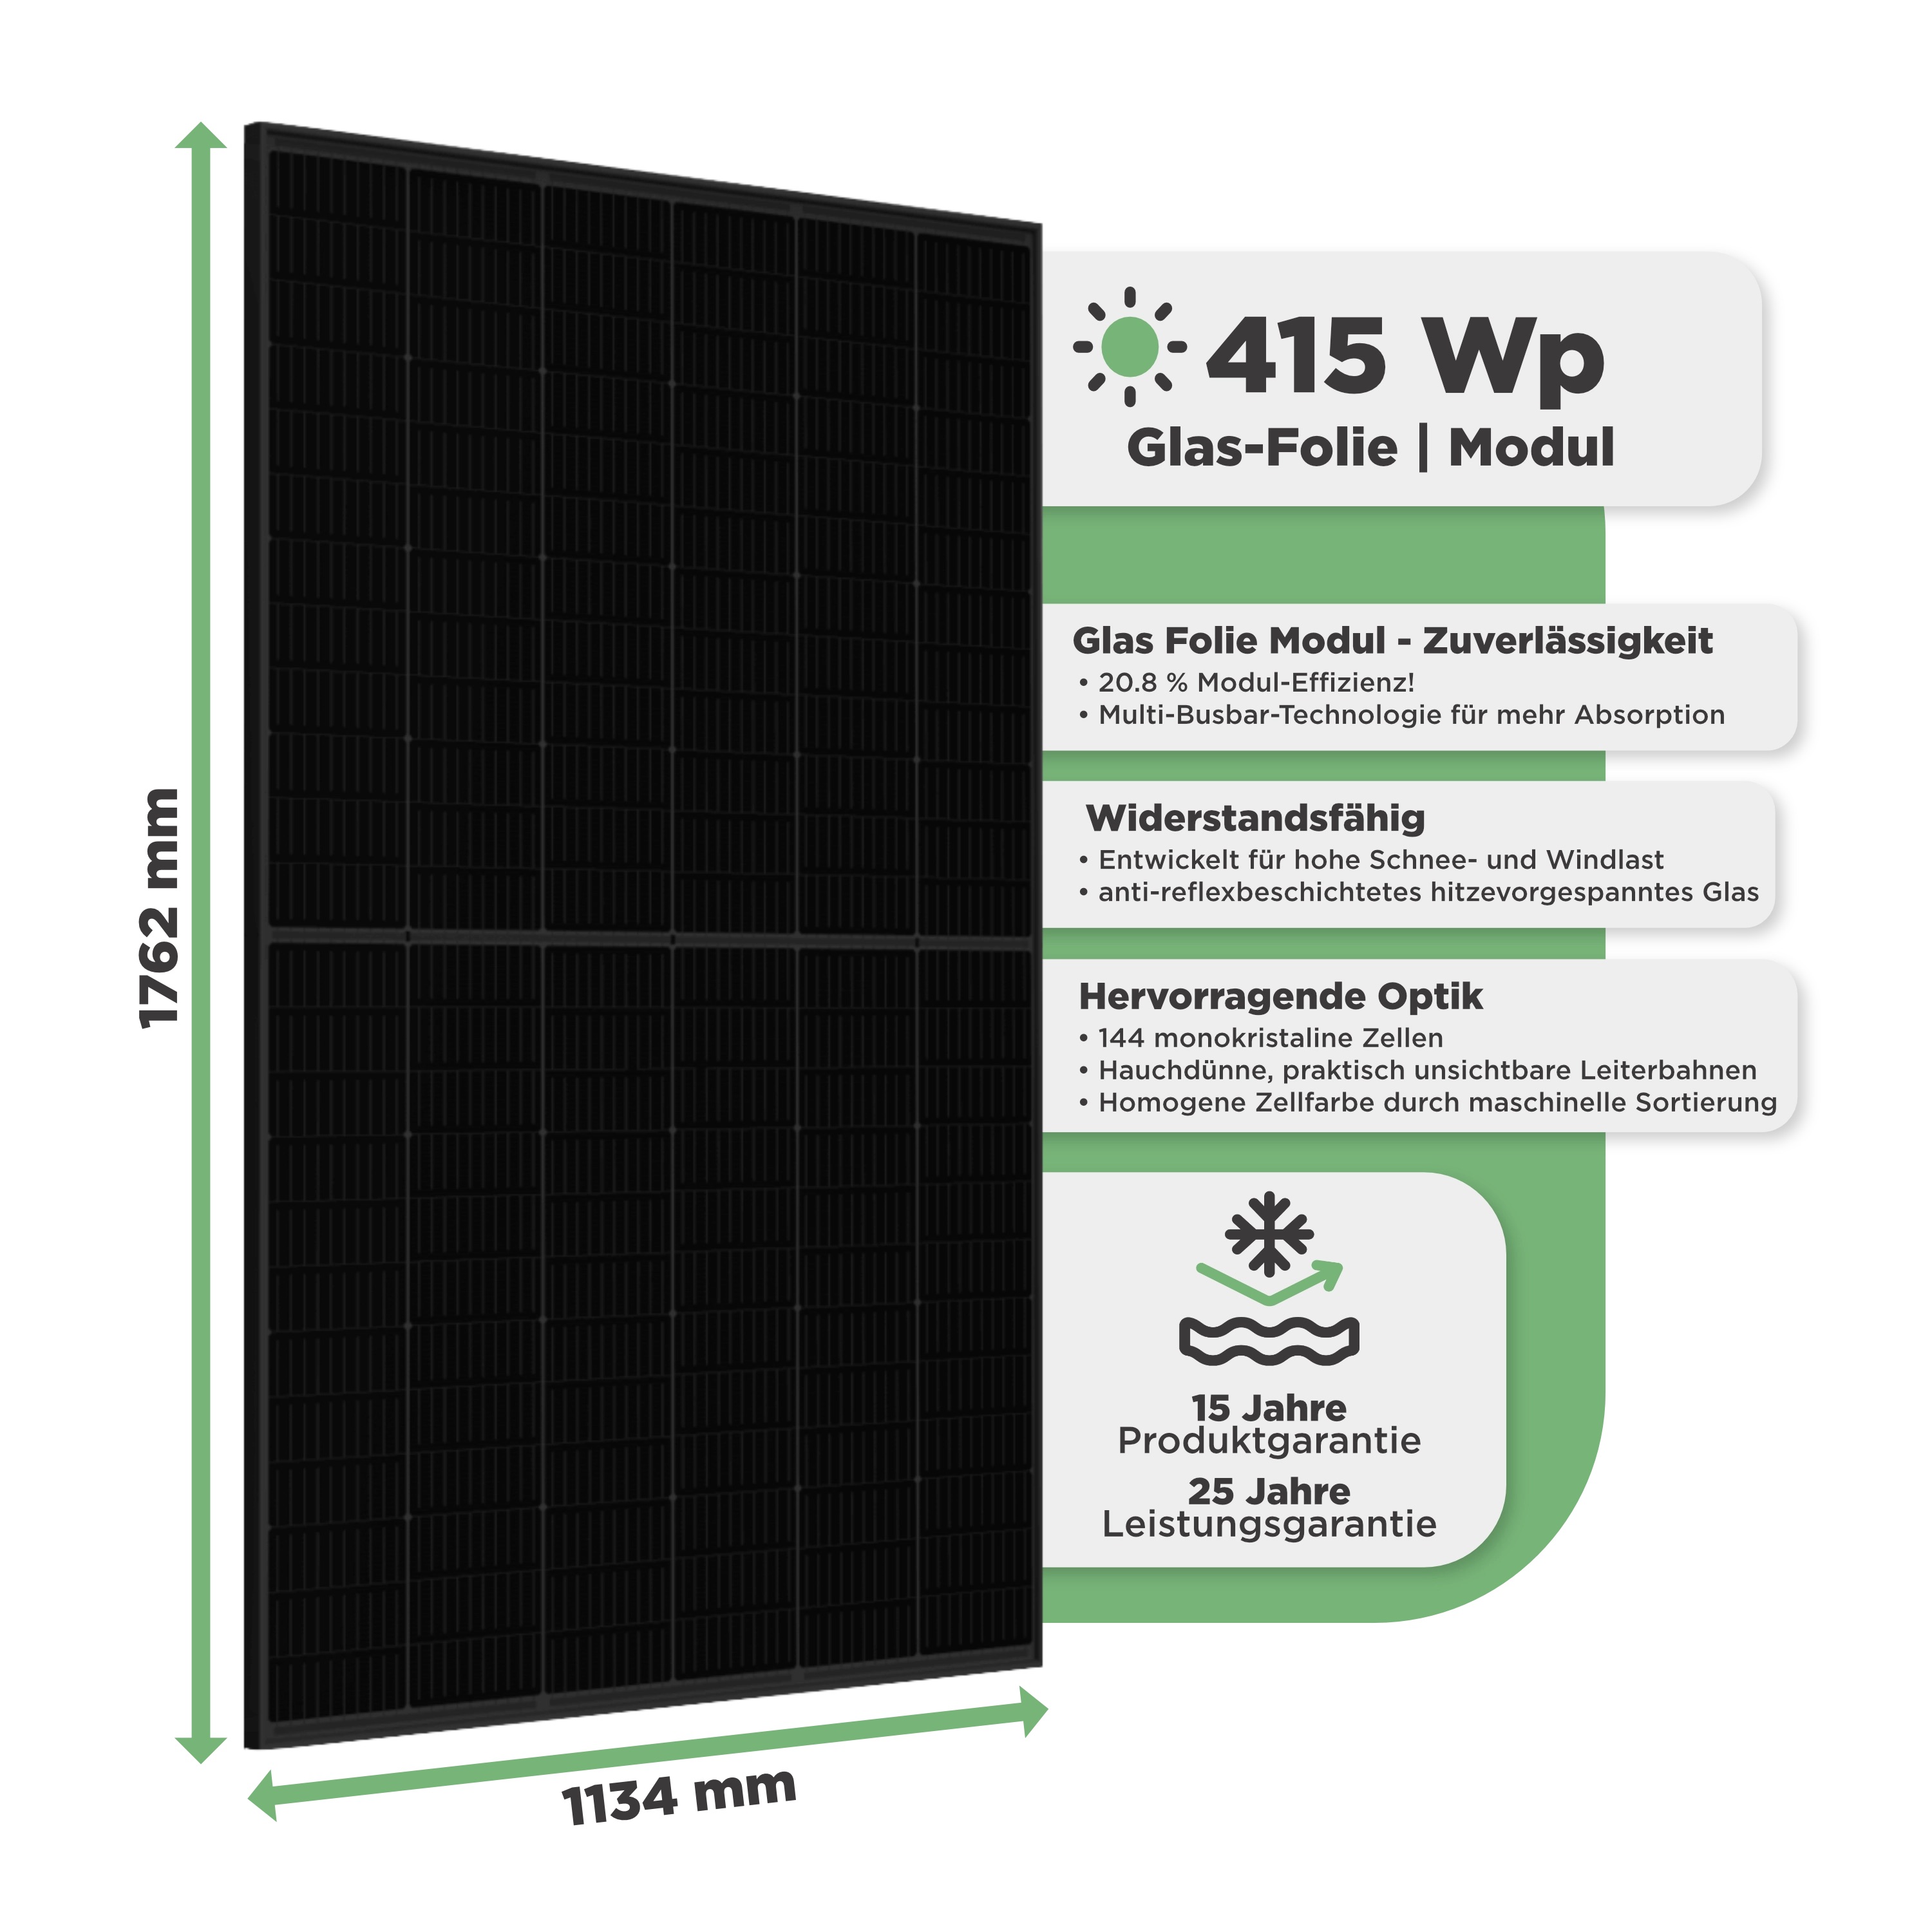 Balkonkraftwerk Trapezblech 415 Wp — APsystems EZ1-M 800 W / Trina Solar / 415 Wp (Full Black, Glas-Folie) / Premium Halterung / eine Reihe hochkant / 1 Modul / 15 m